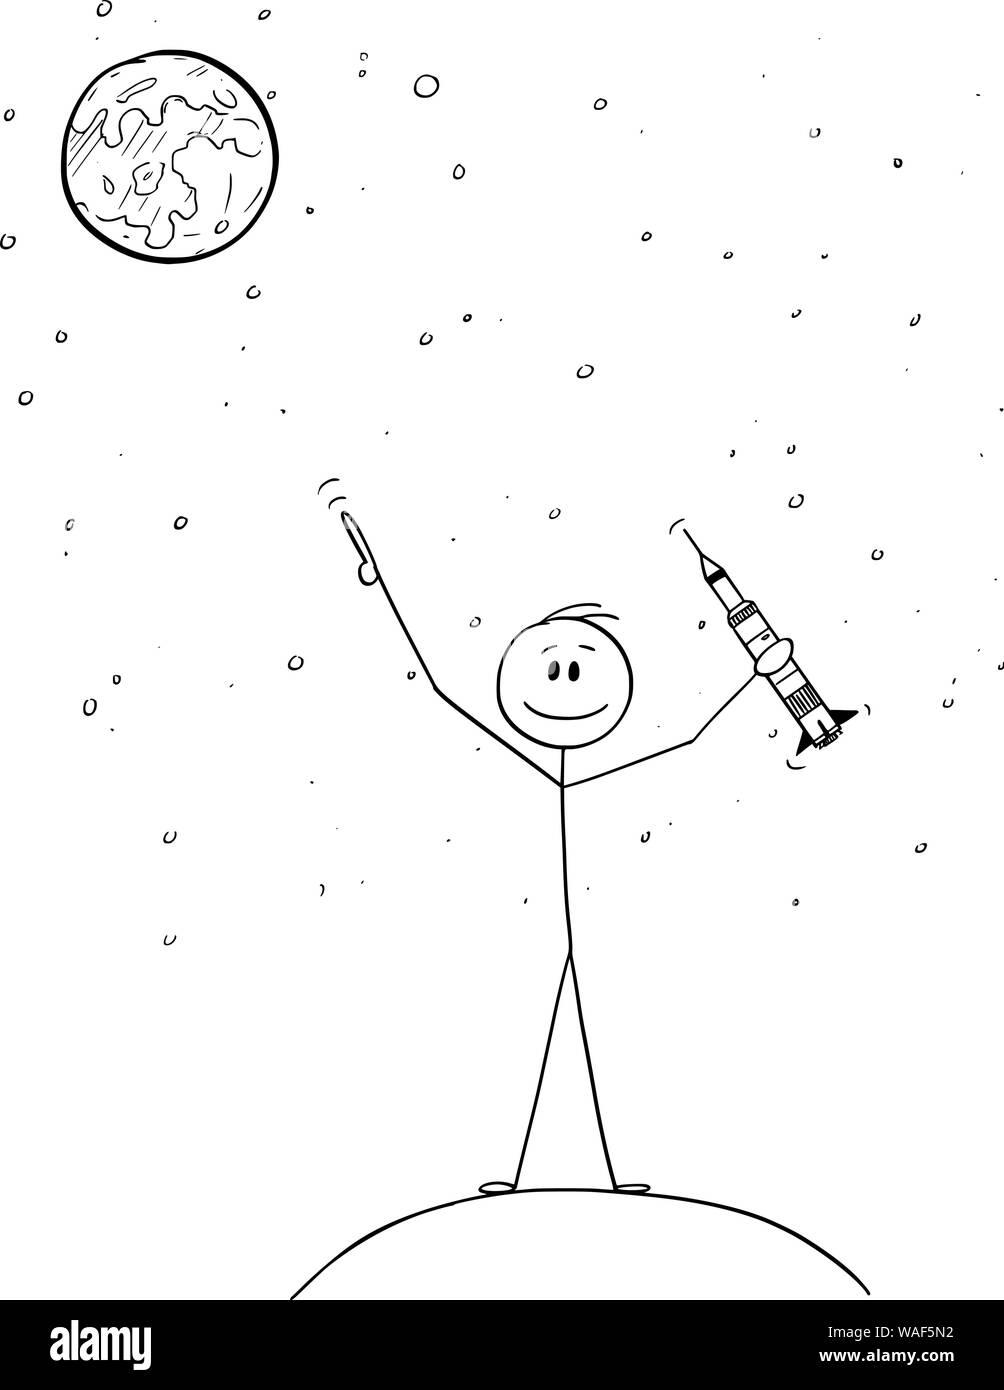 Cartoon vectores stick figura dibujo Ilustración conceptual del hombre sujetando el modelo de cohete y apuntando a la Luna o a Marte. Concepto de la exploración espacial. Ilustración del Vector